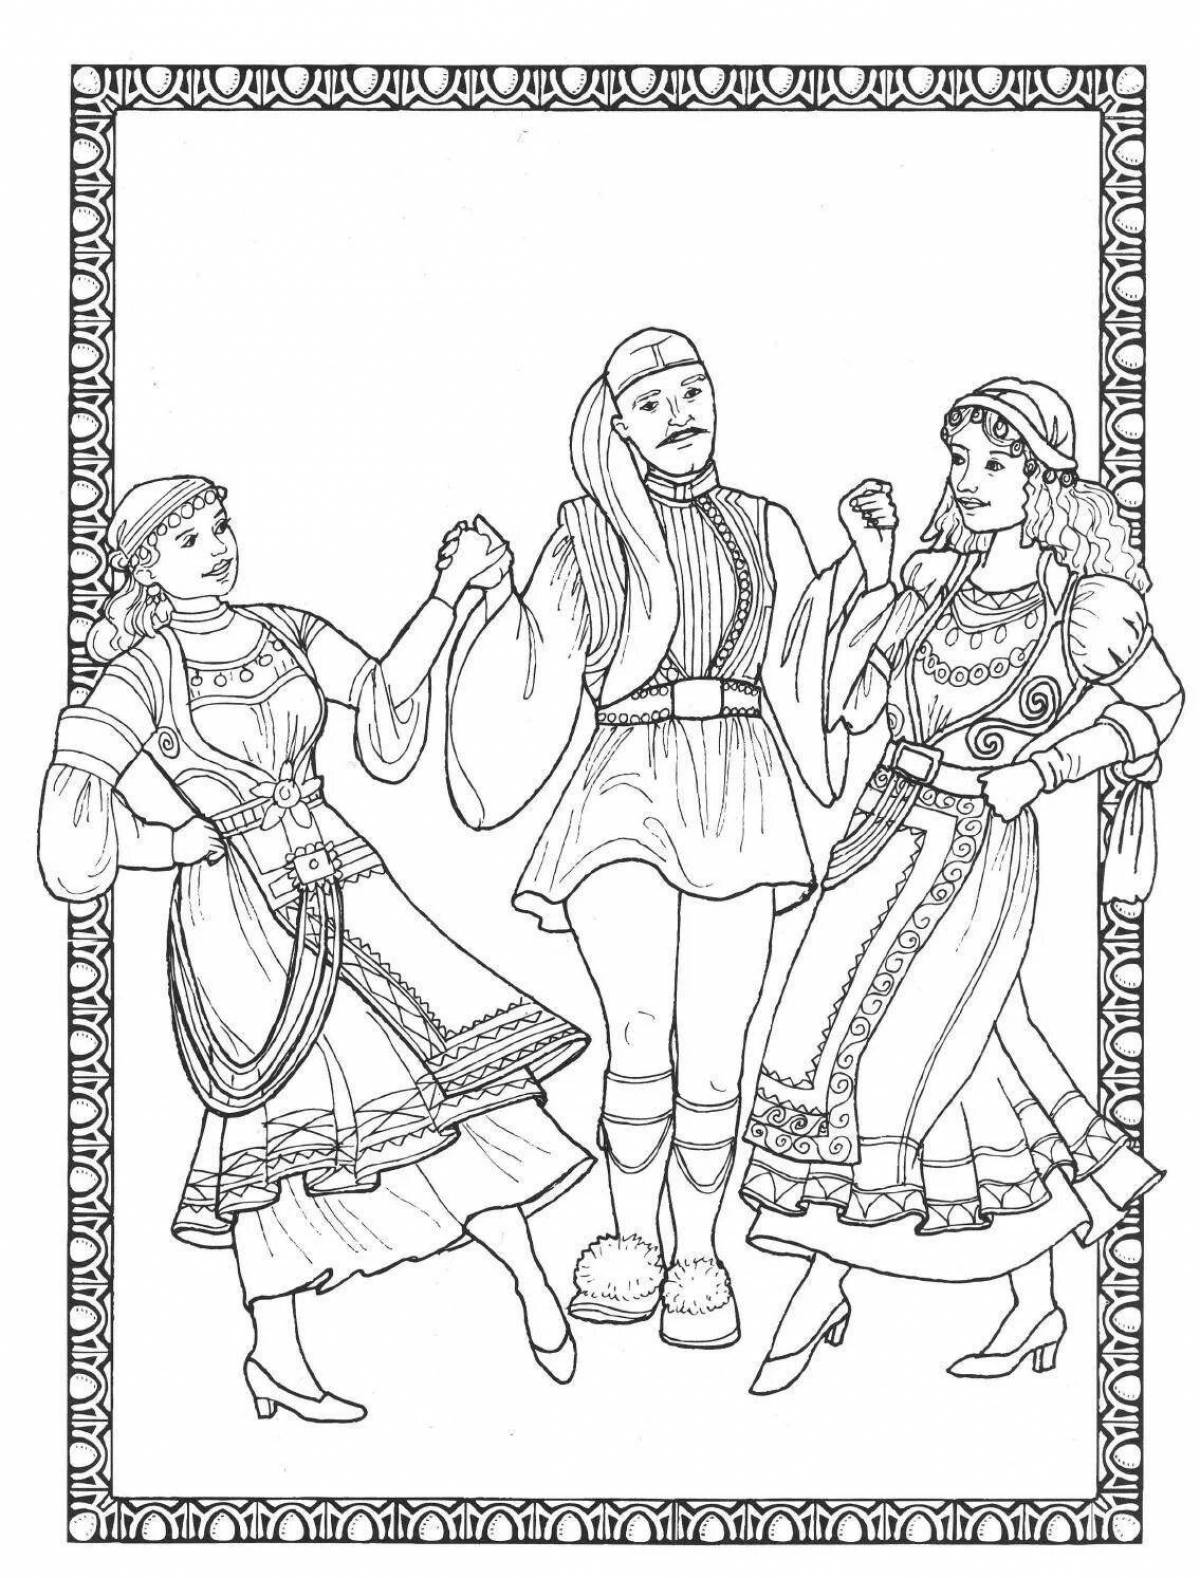 Coloring page joyful folk dance